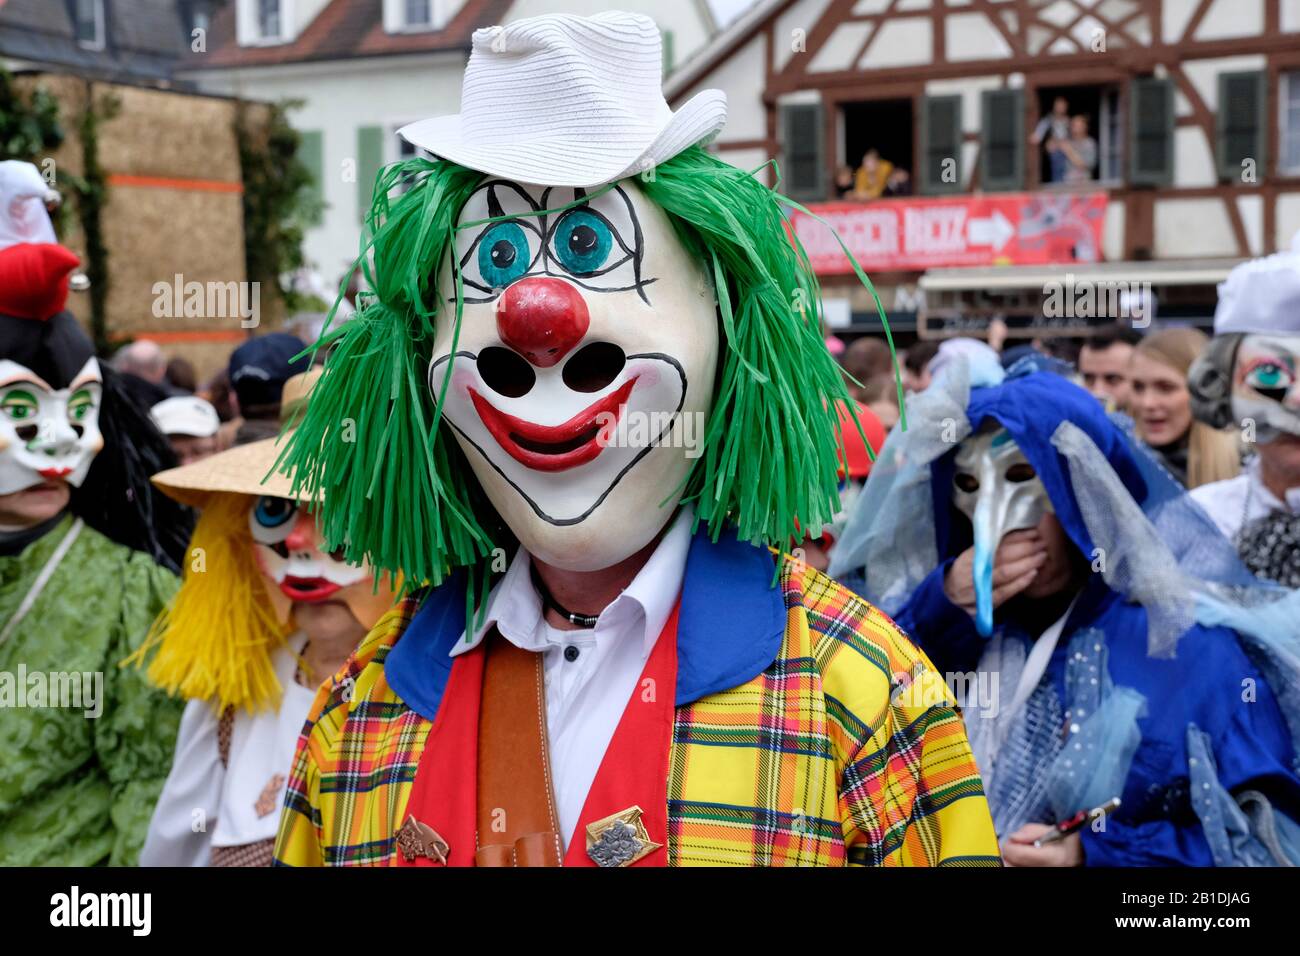 En Basel fasnacht (carnaval), los artistas ocultan su verdadera identidad con una máscara. Foto de stock